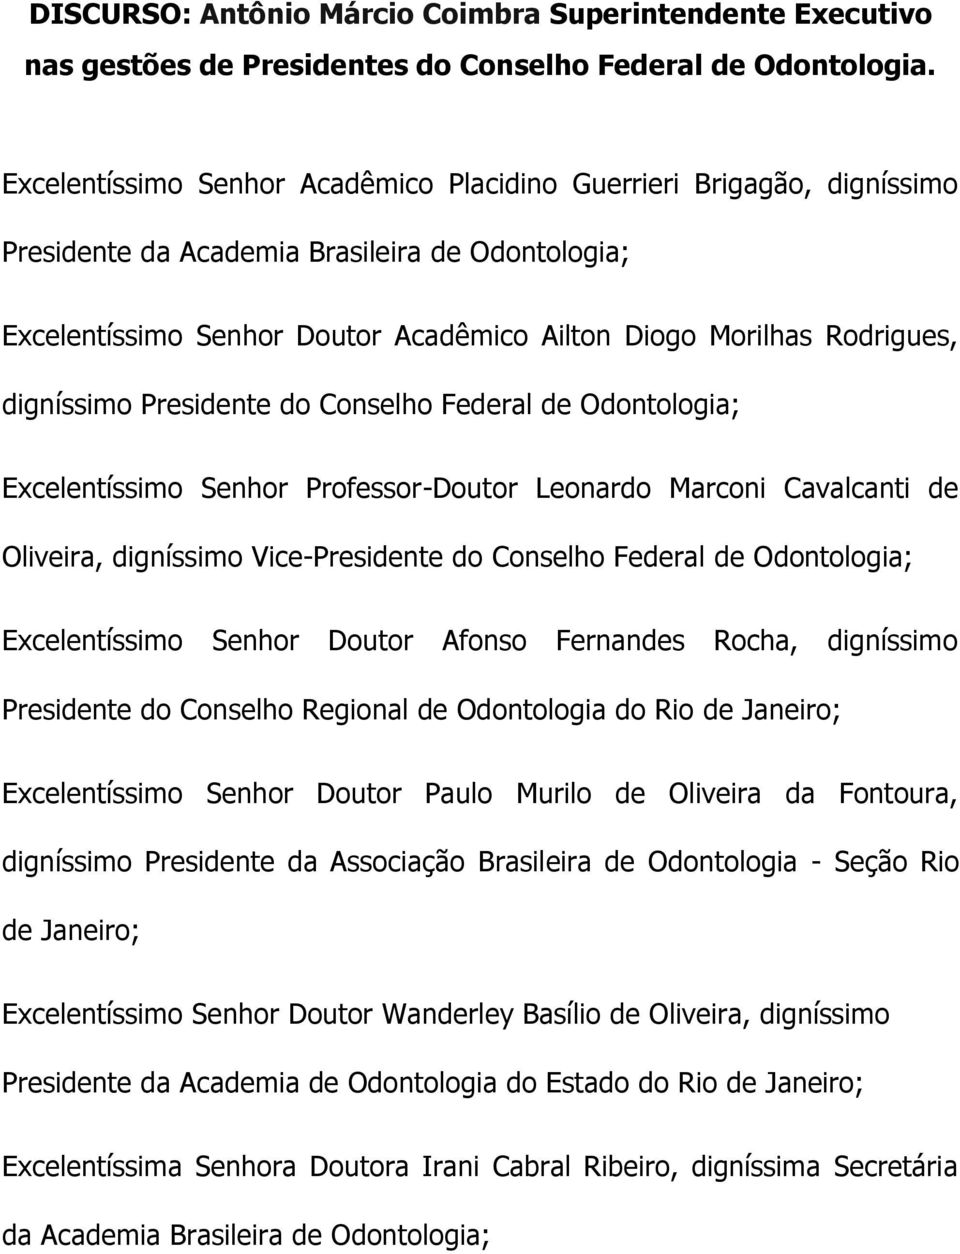 digníssimo Presidente do Conselho Federal de Odontologia; Excelentíssimo Senhor Professor-Doutor Leonardo Marconi Cavalcanti de Oliveira, digníssimo Vice-Presidente do Conselho Federal de